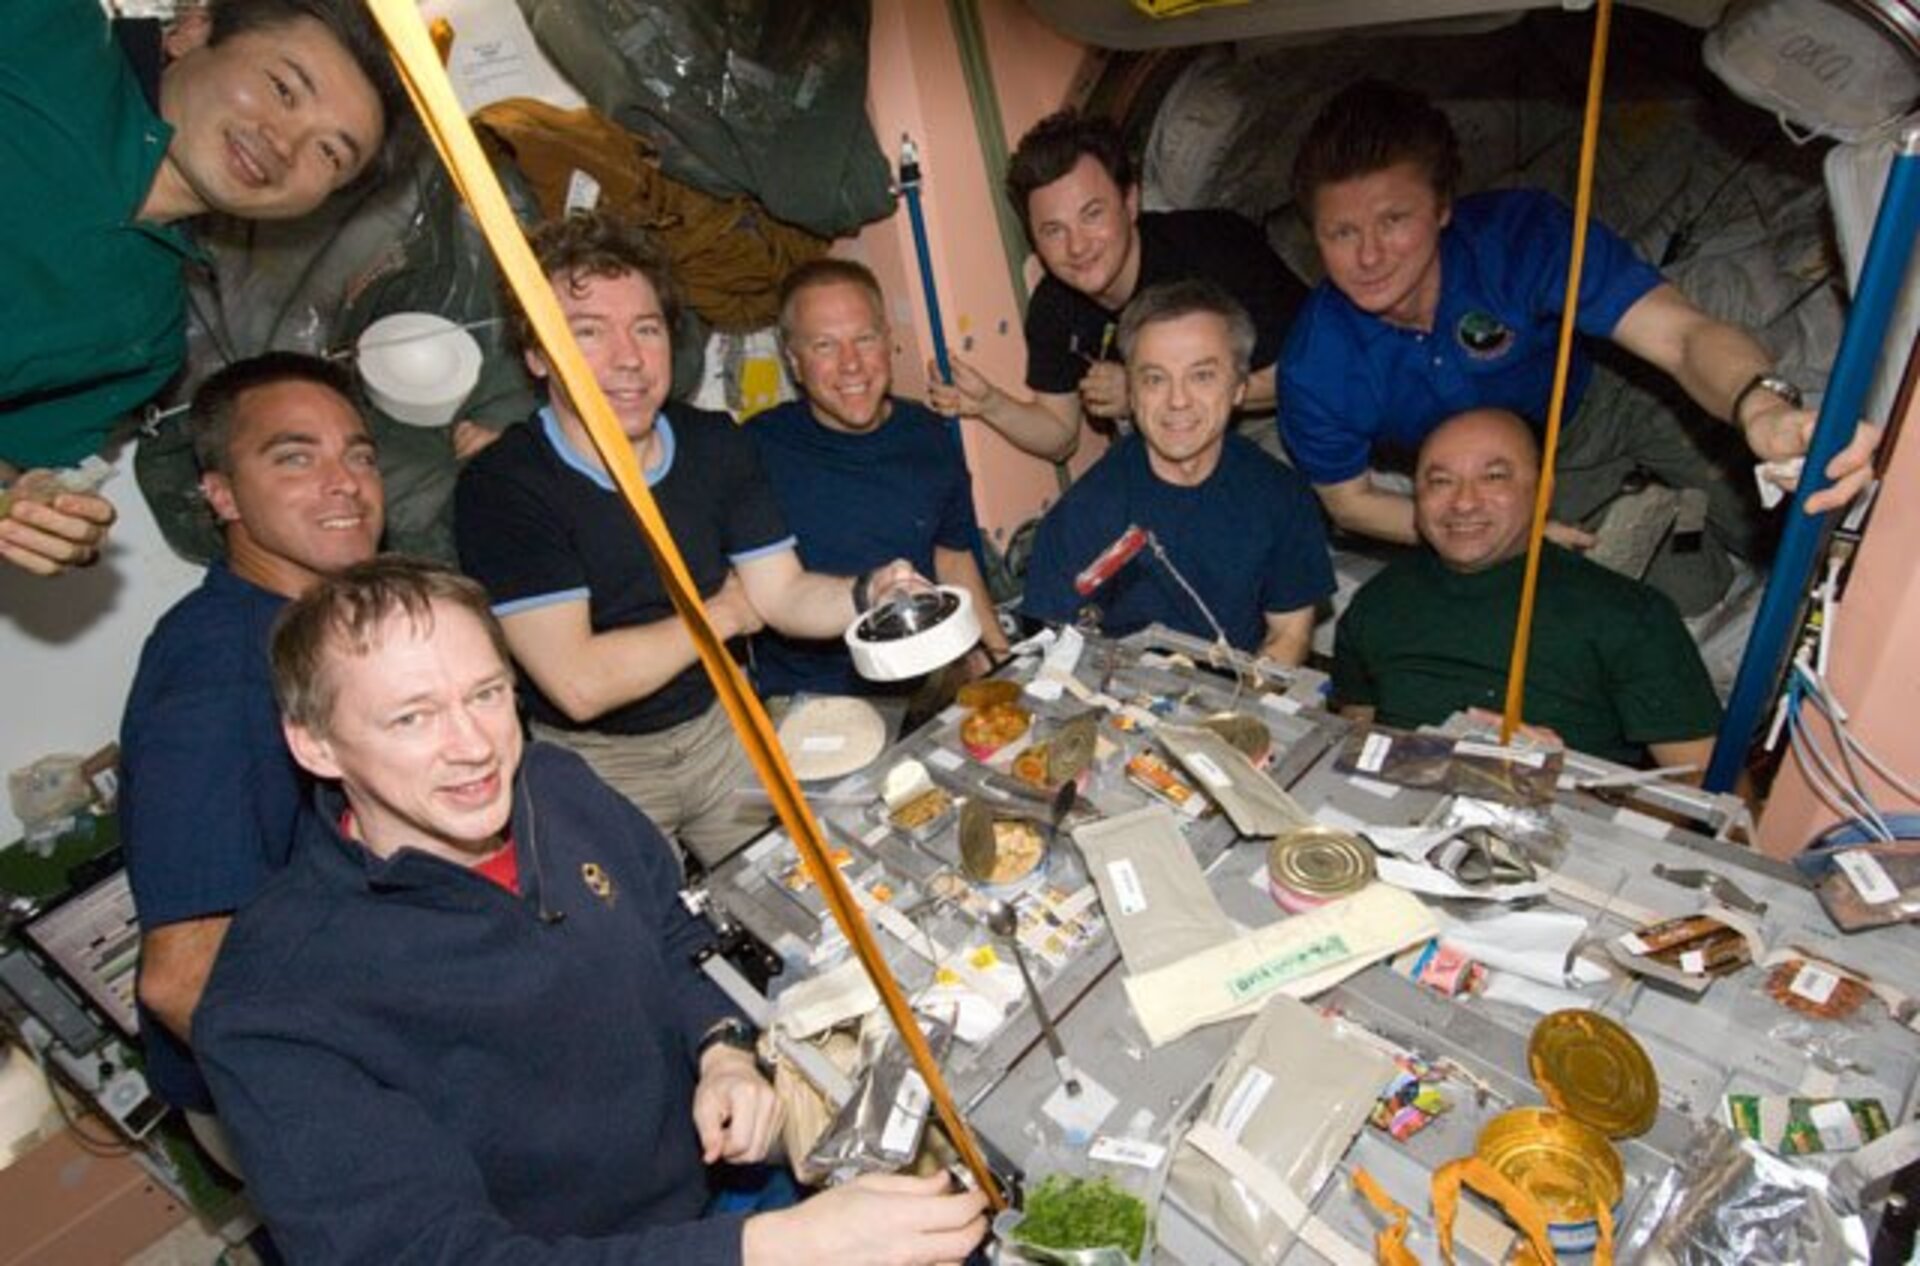 Visite d’Endeavour: sur cette photo, on me voit avec huit collègues au cours du repas